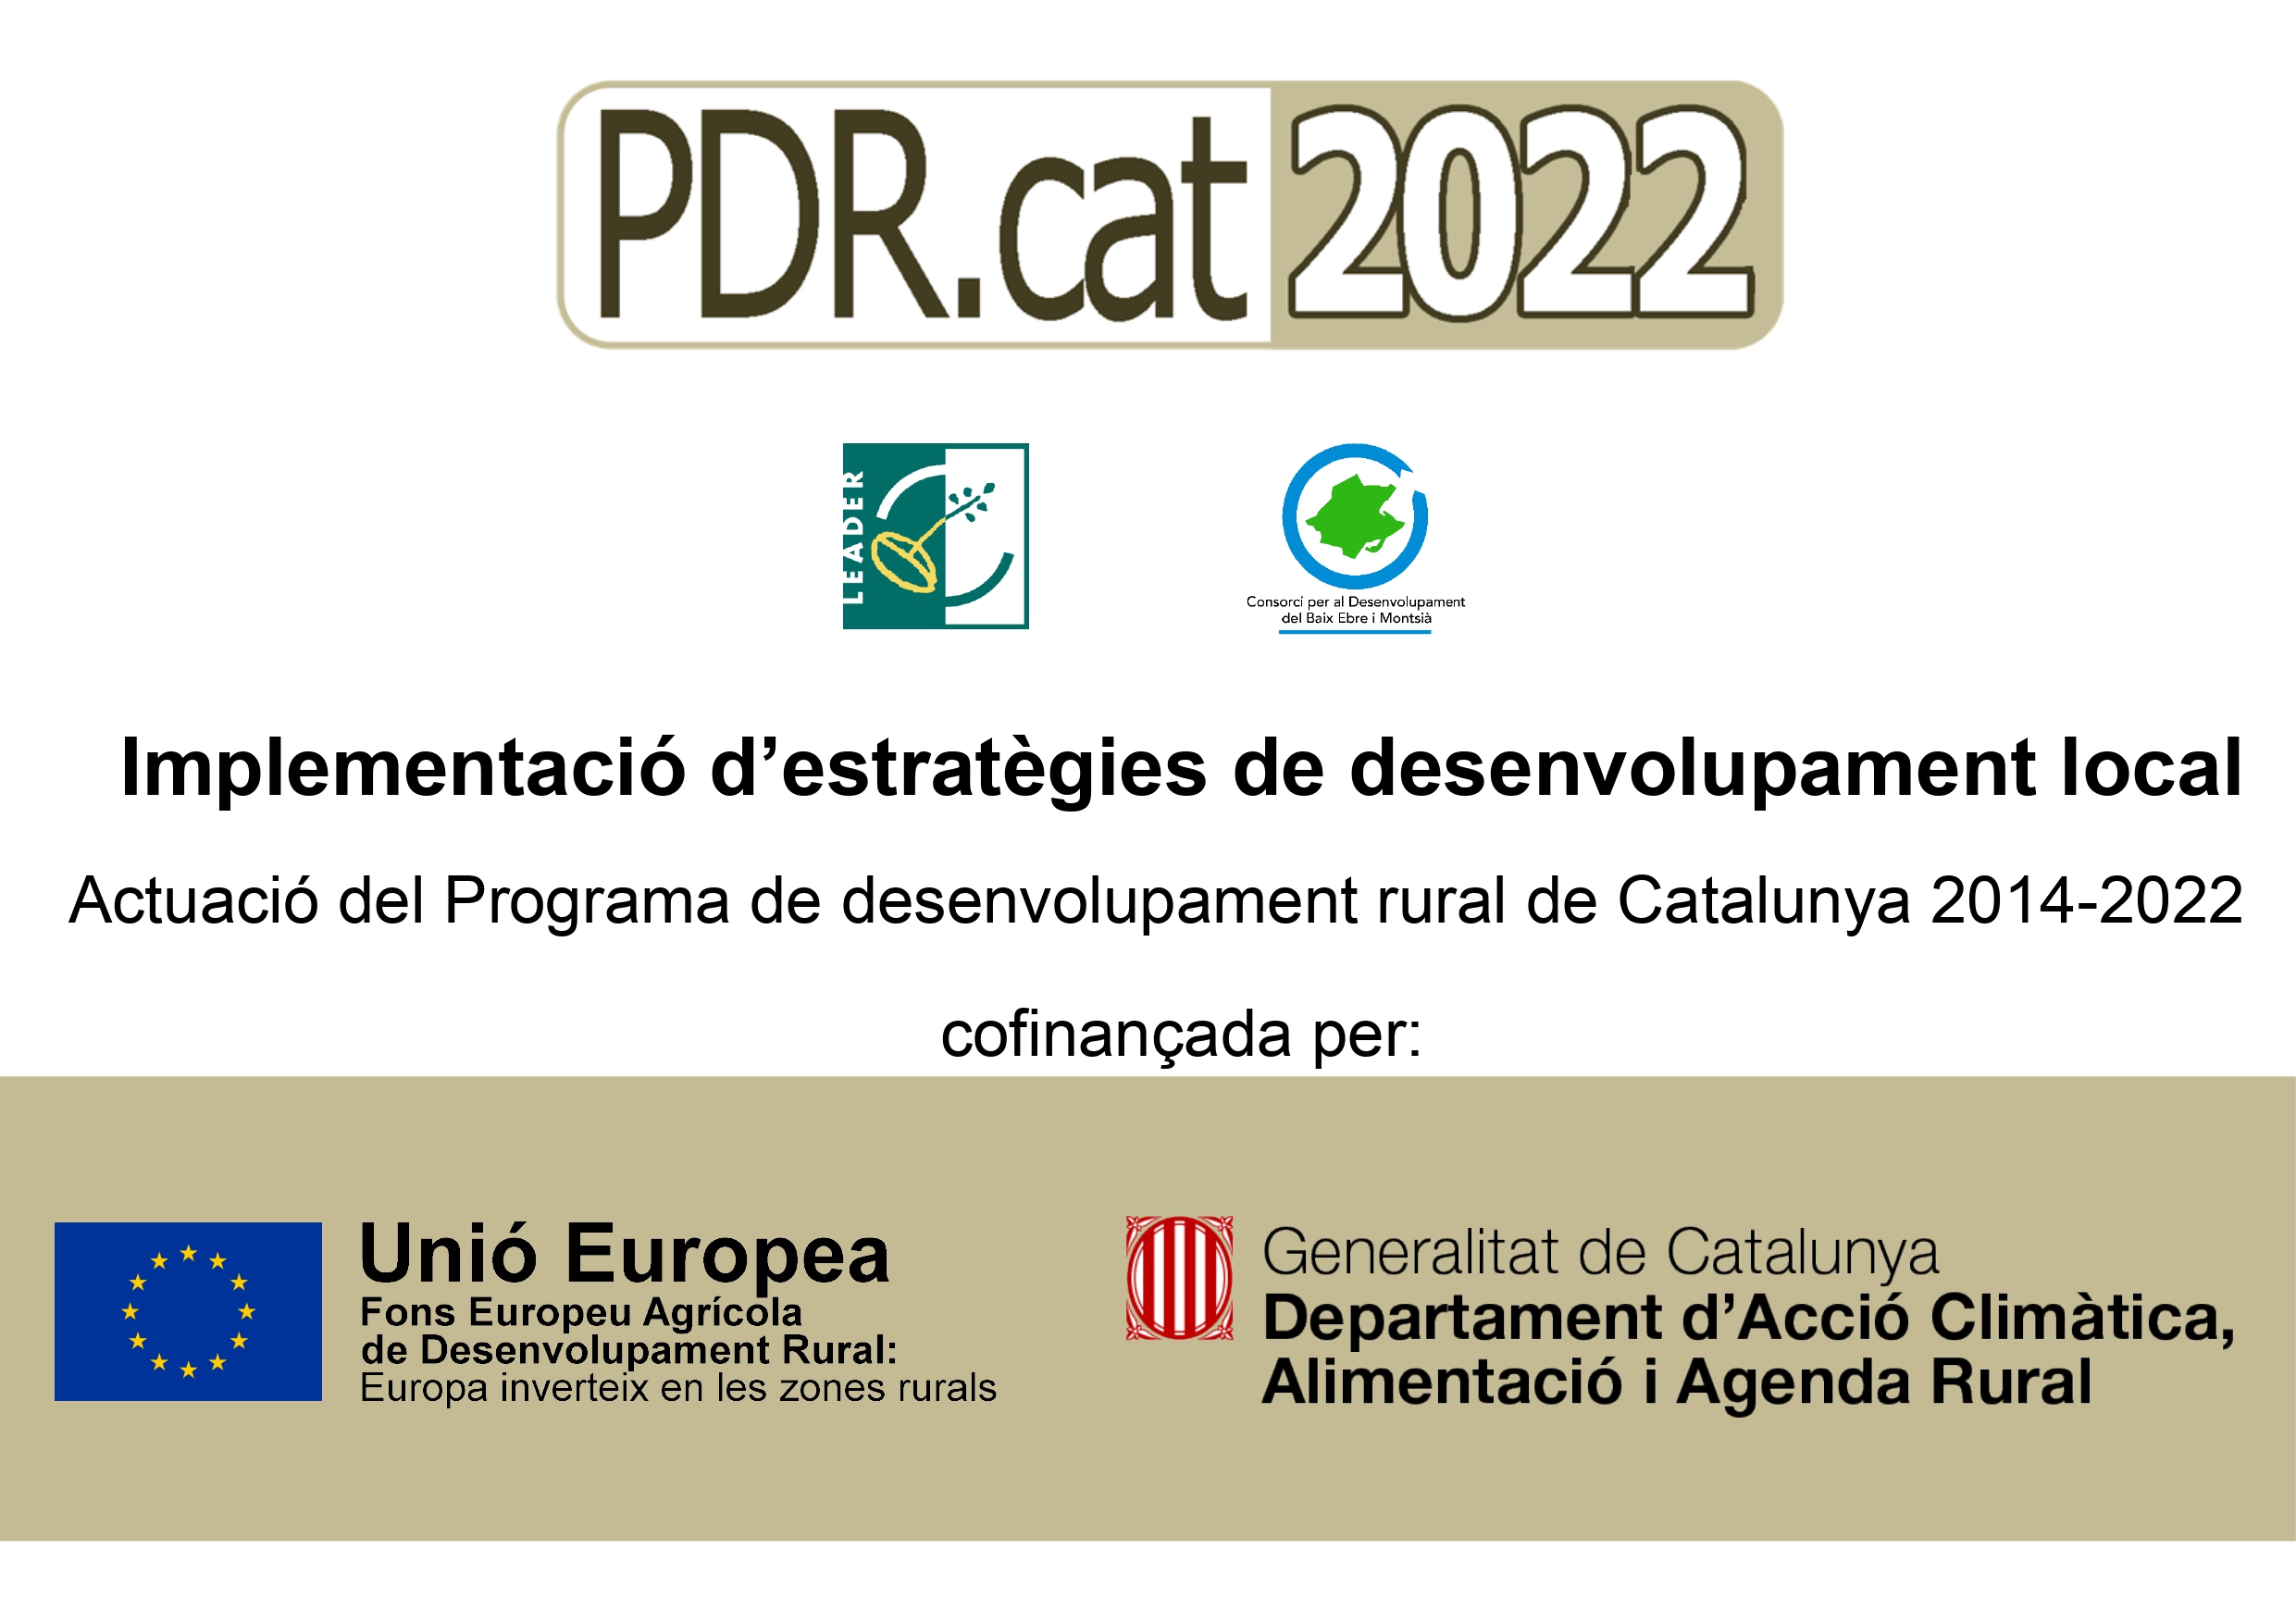 Actuación del Programa de Desarrollo Rural de Catalunya 2014-2022